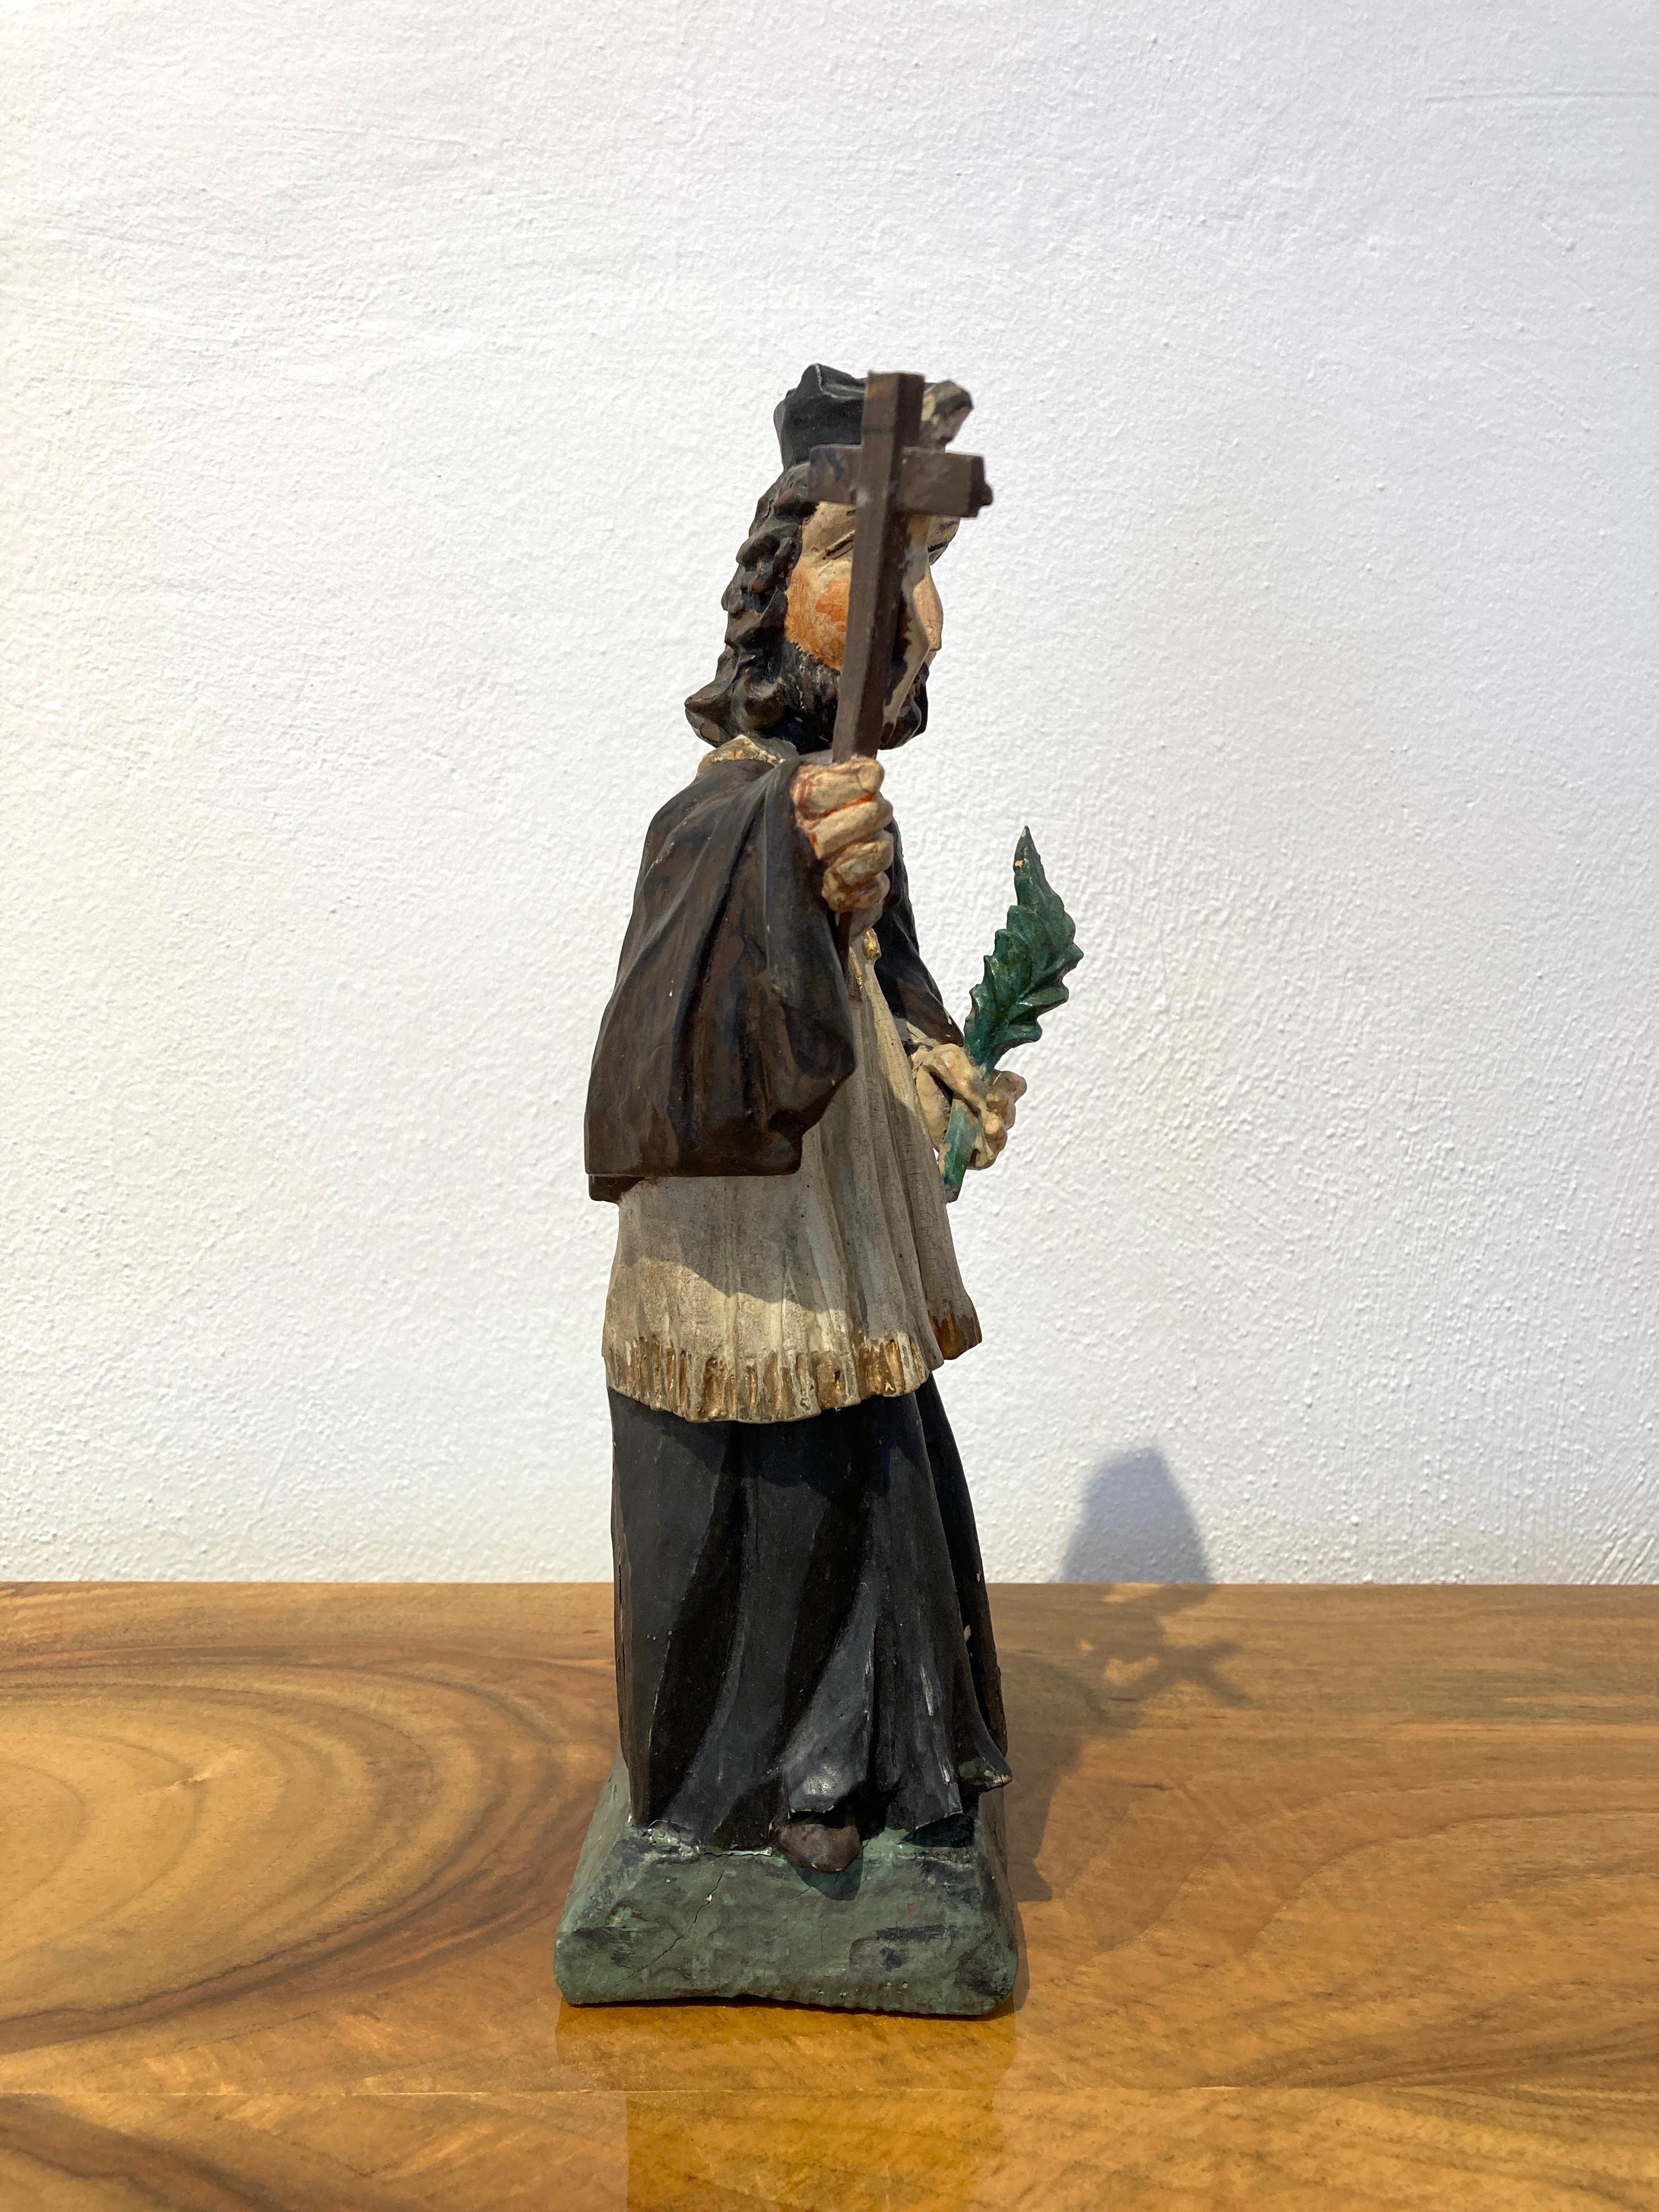 Johannes Nepomuk, Bohème, 1. Hälfte des 19. Jahrhunderts.
Aus Holz geschnitzte Figur des Heiligen Nepomuk, bekannt als Brückenheiliger.
Polychromes Originalgemälde in schönem Zustand, vollständig.
 